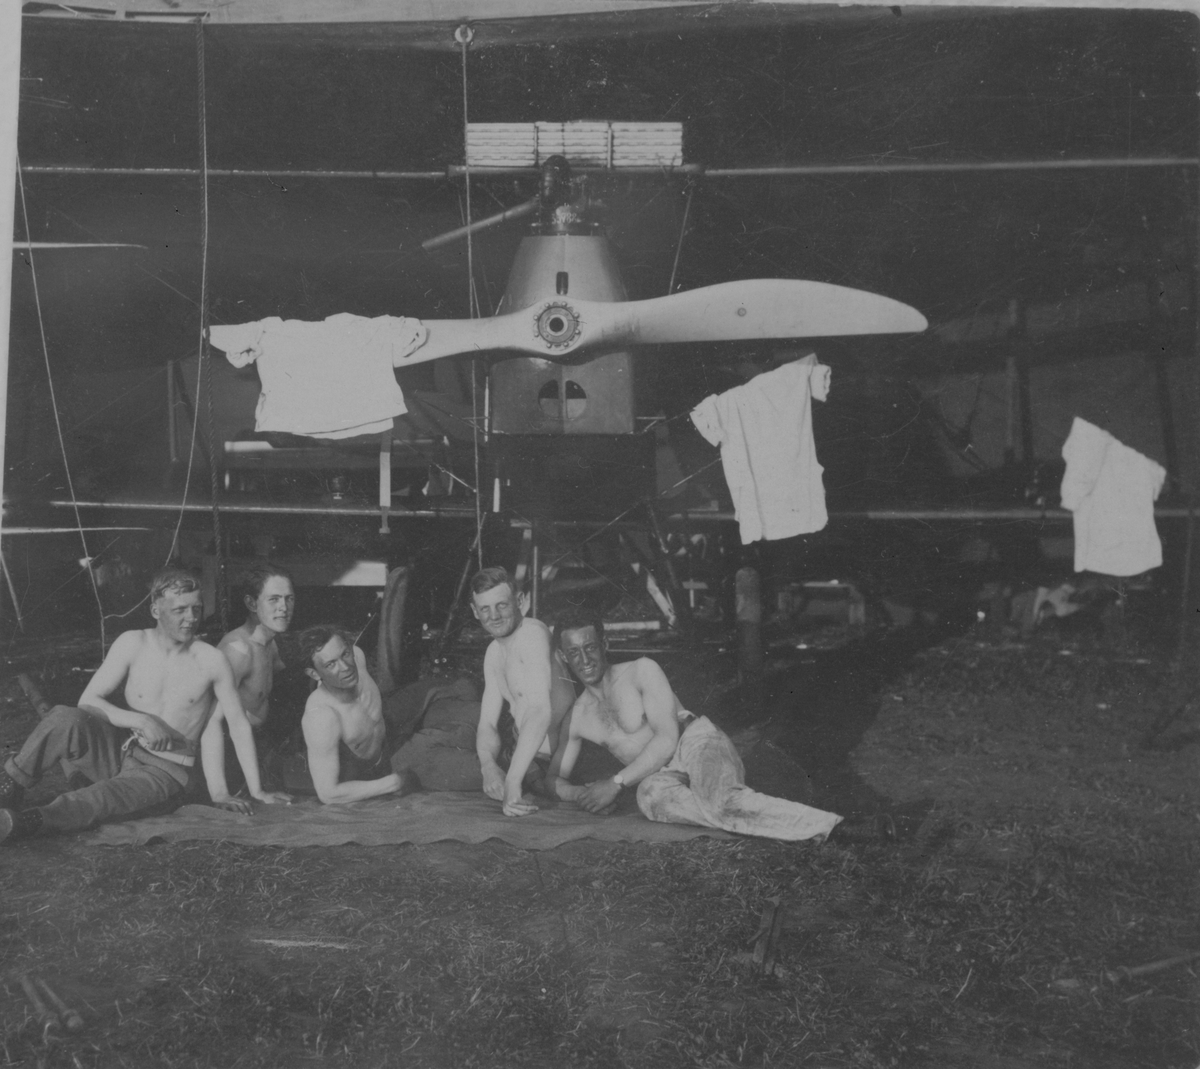 Sommardag. Fem män med bar överkropp sitter framför ett flygplan i en hangar på Hästholmens flygfält, 1923. På flygplanspropellern hänger tröjor.